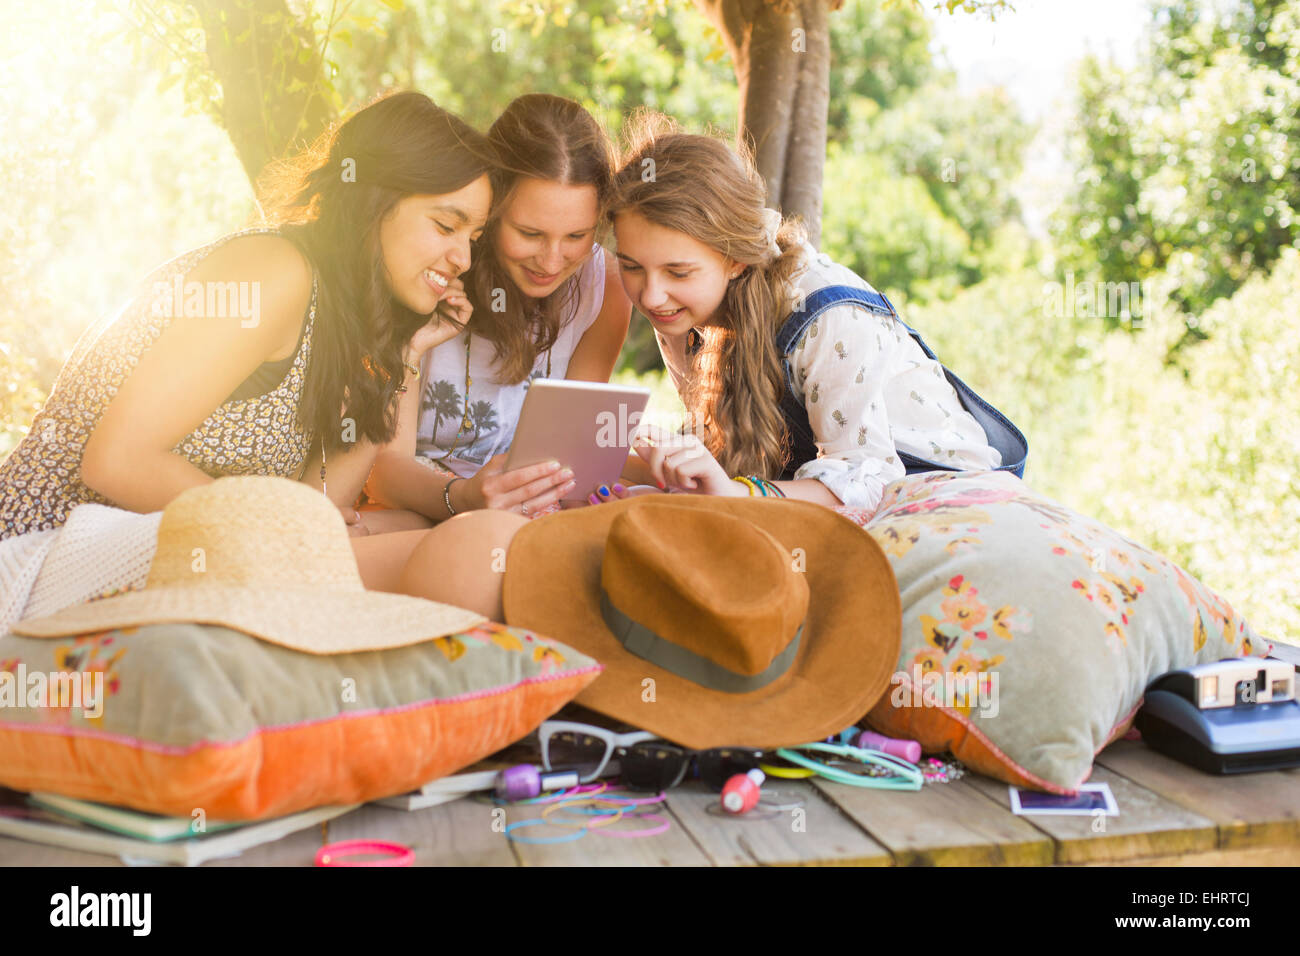 Tre ragazze adolescenti con tavoletta digitale in tree house Foto Stock